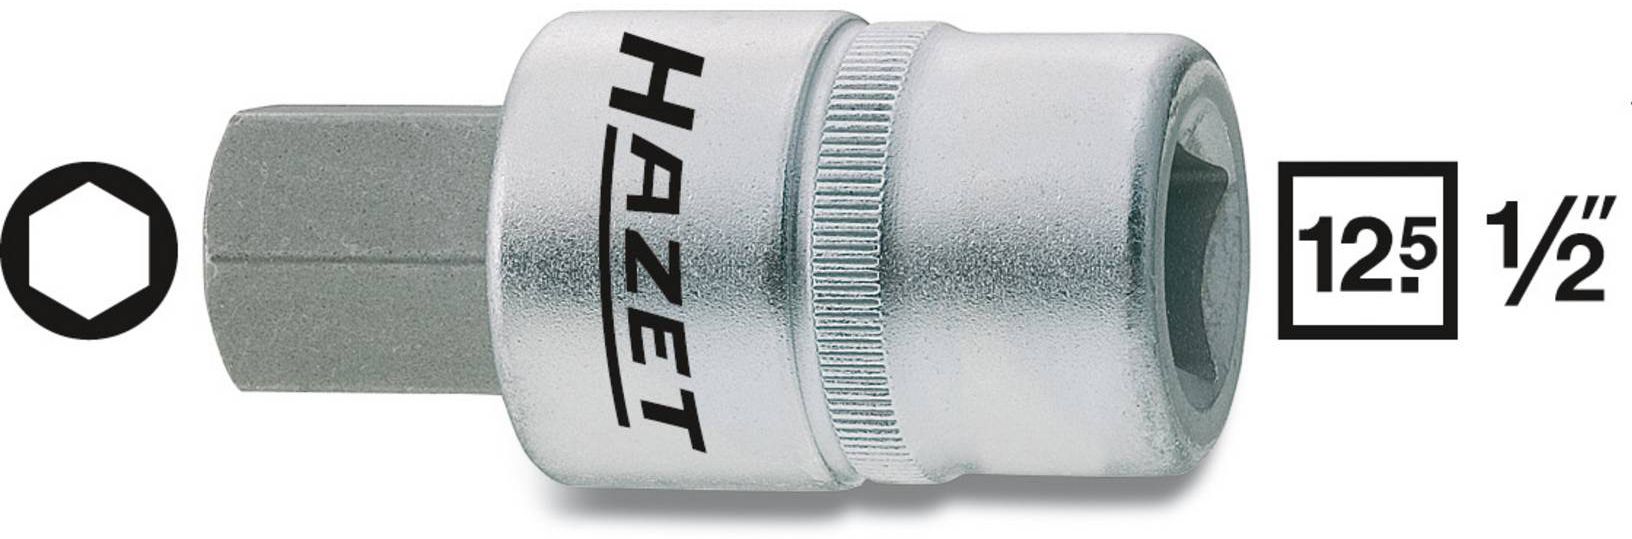 HAZET Schraubendreher-Einsatz, Inbus 986-14mm, 1/2", L: 60mm, D: 24,6mm - Steck- und Drehmomentschlüssel